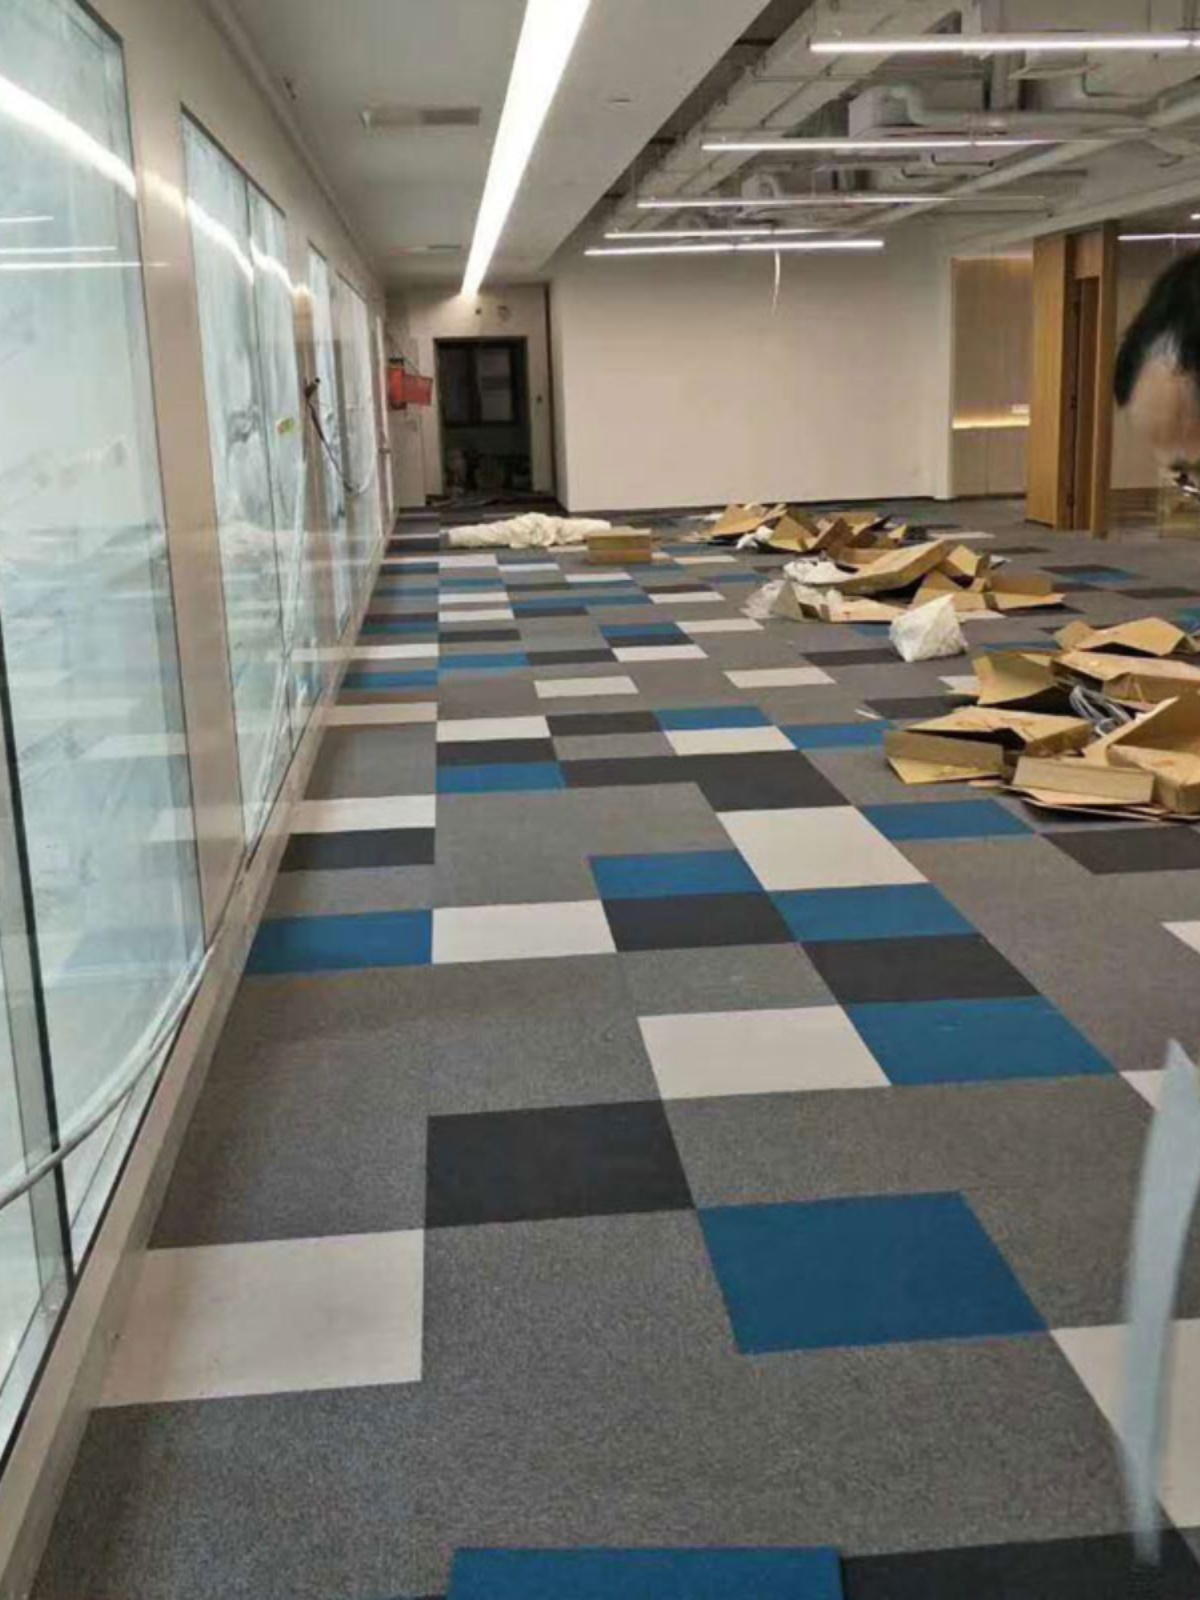 办公室地毯拼接方块公司办公商用台球厅写字楼满铺大面积地毯全铺